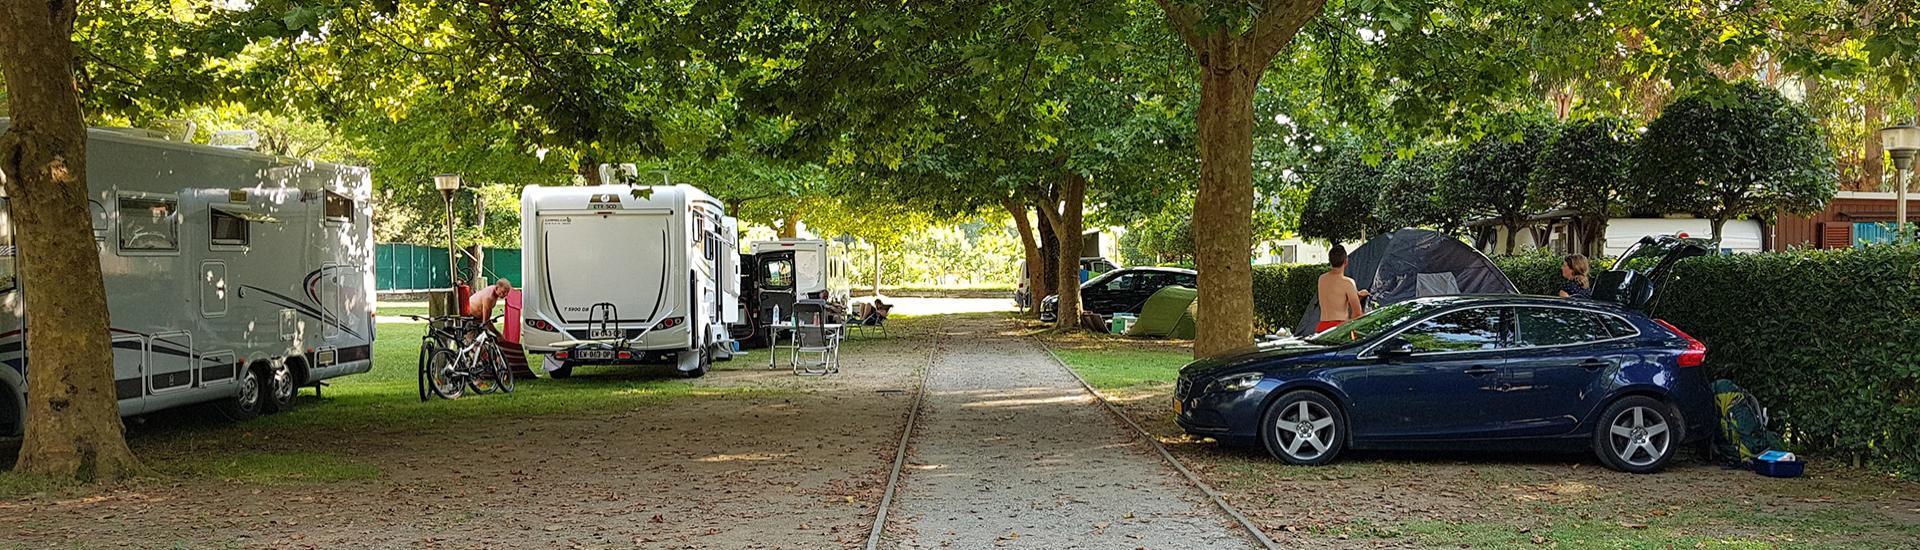 Camping avec camping-cars, voitures et tentes sous des arbres ombragés.